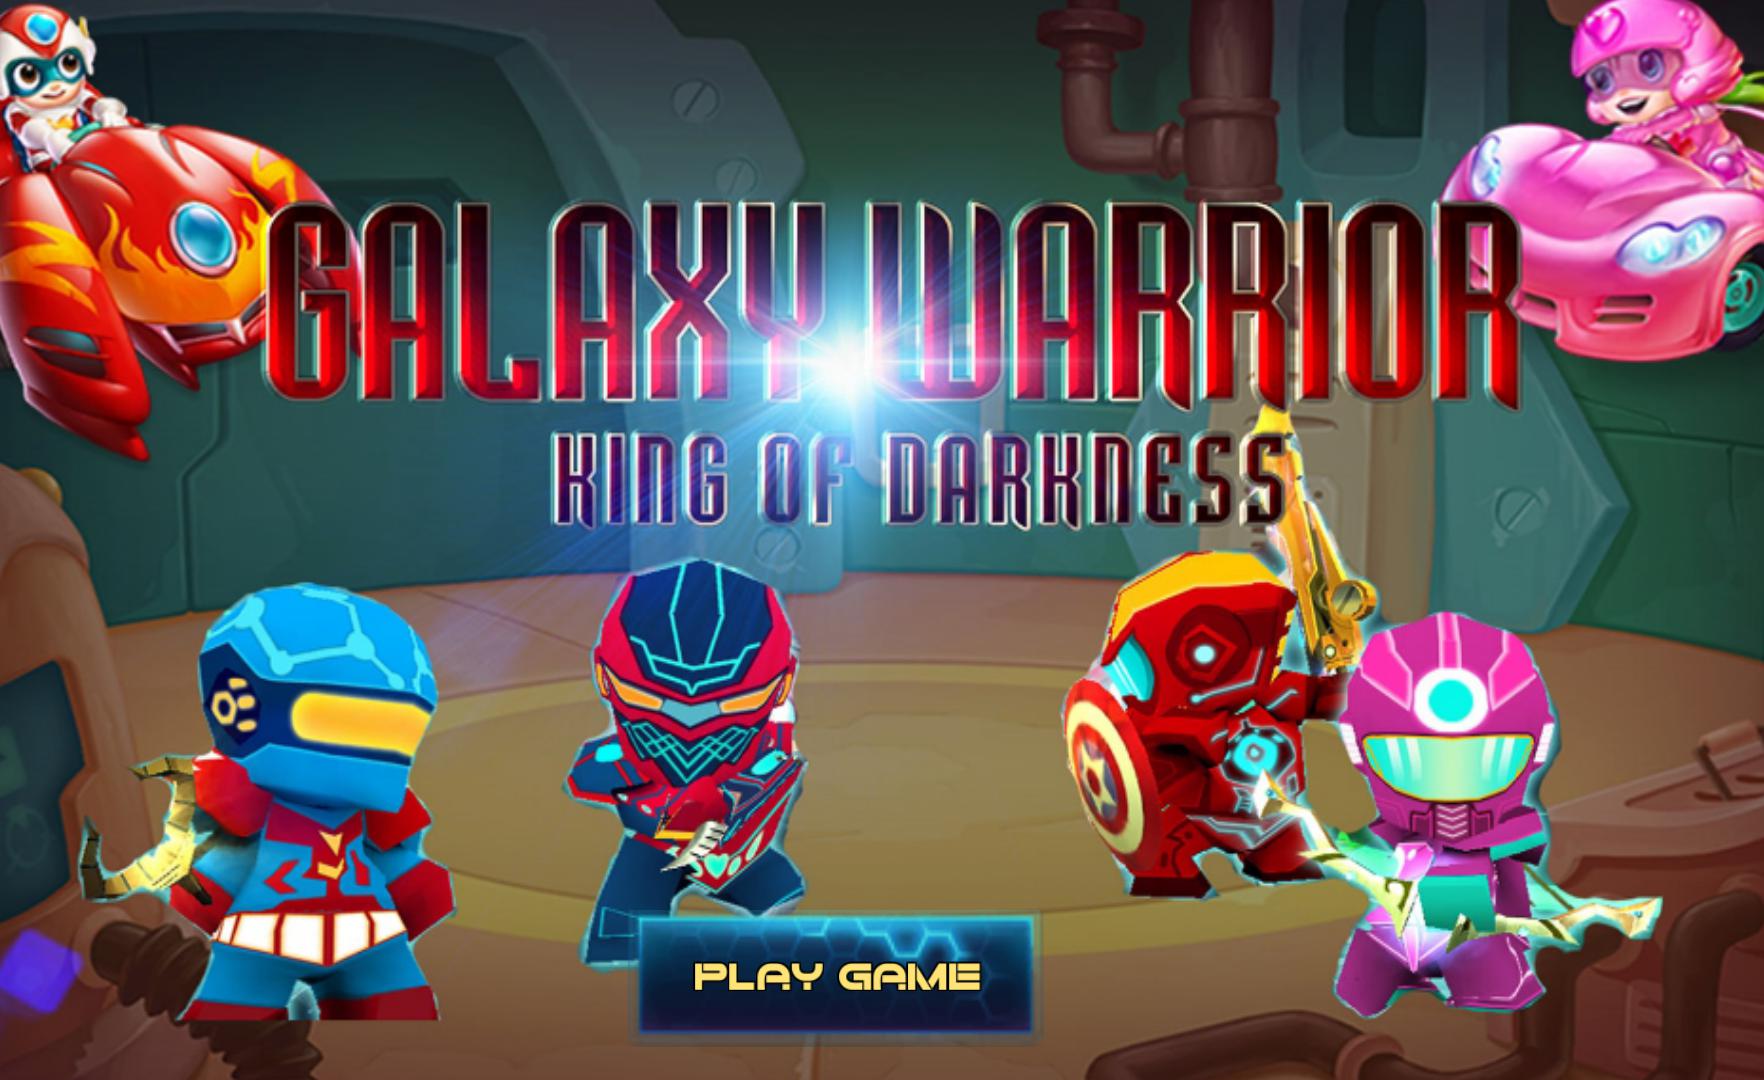 Galaxy Warriors - The Kingdom Of Darkness